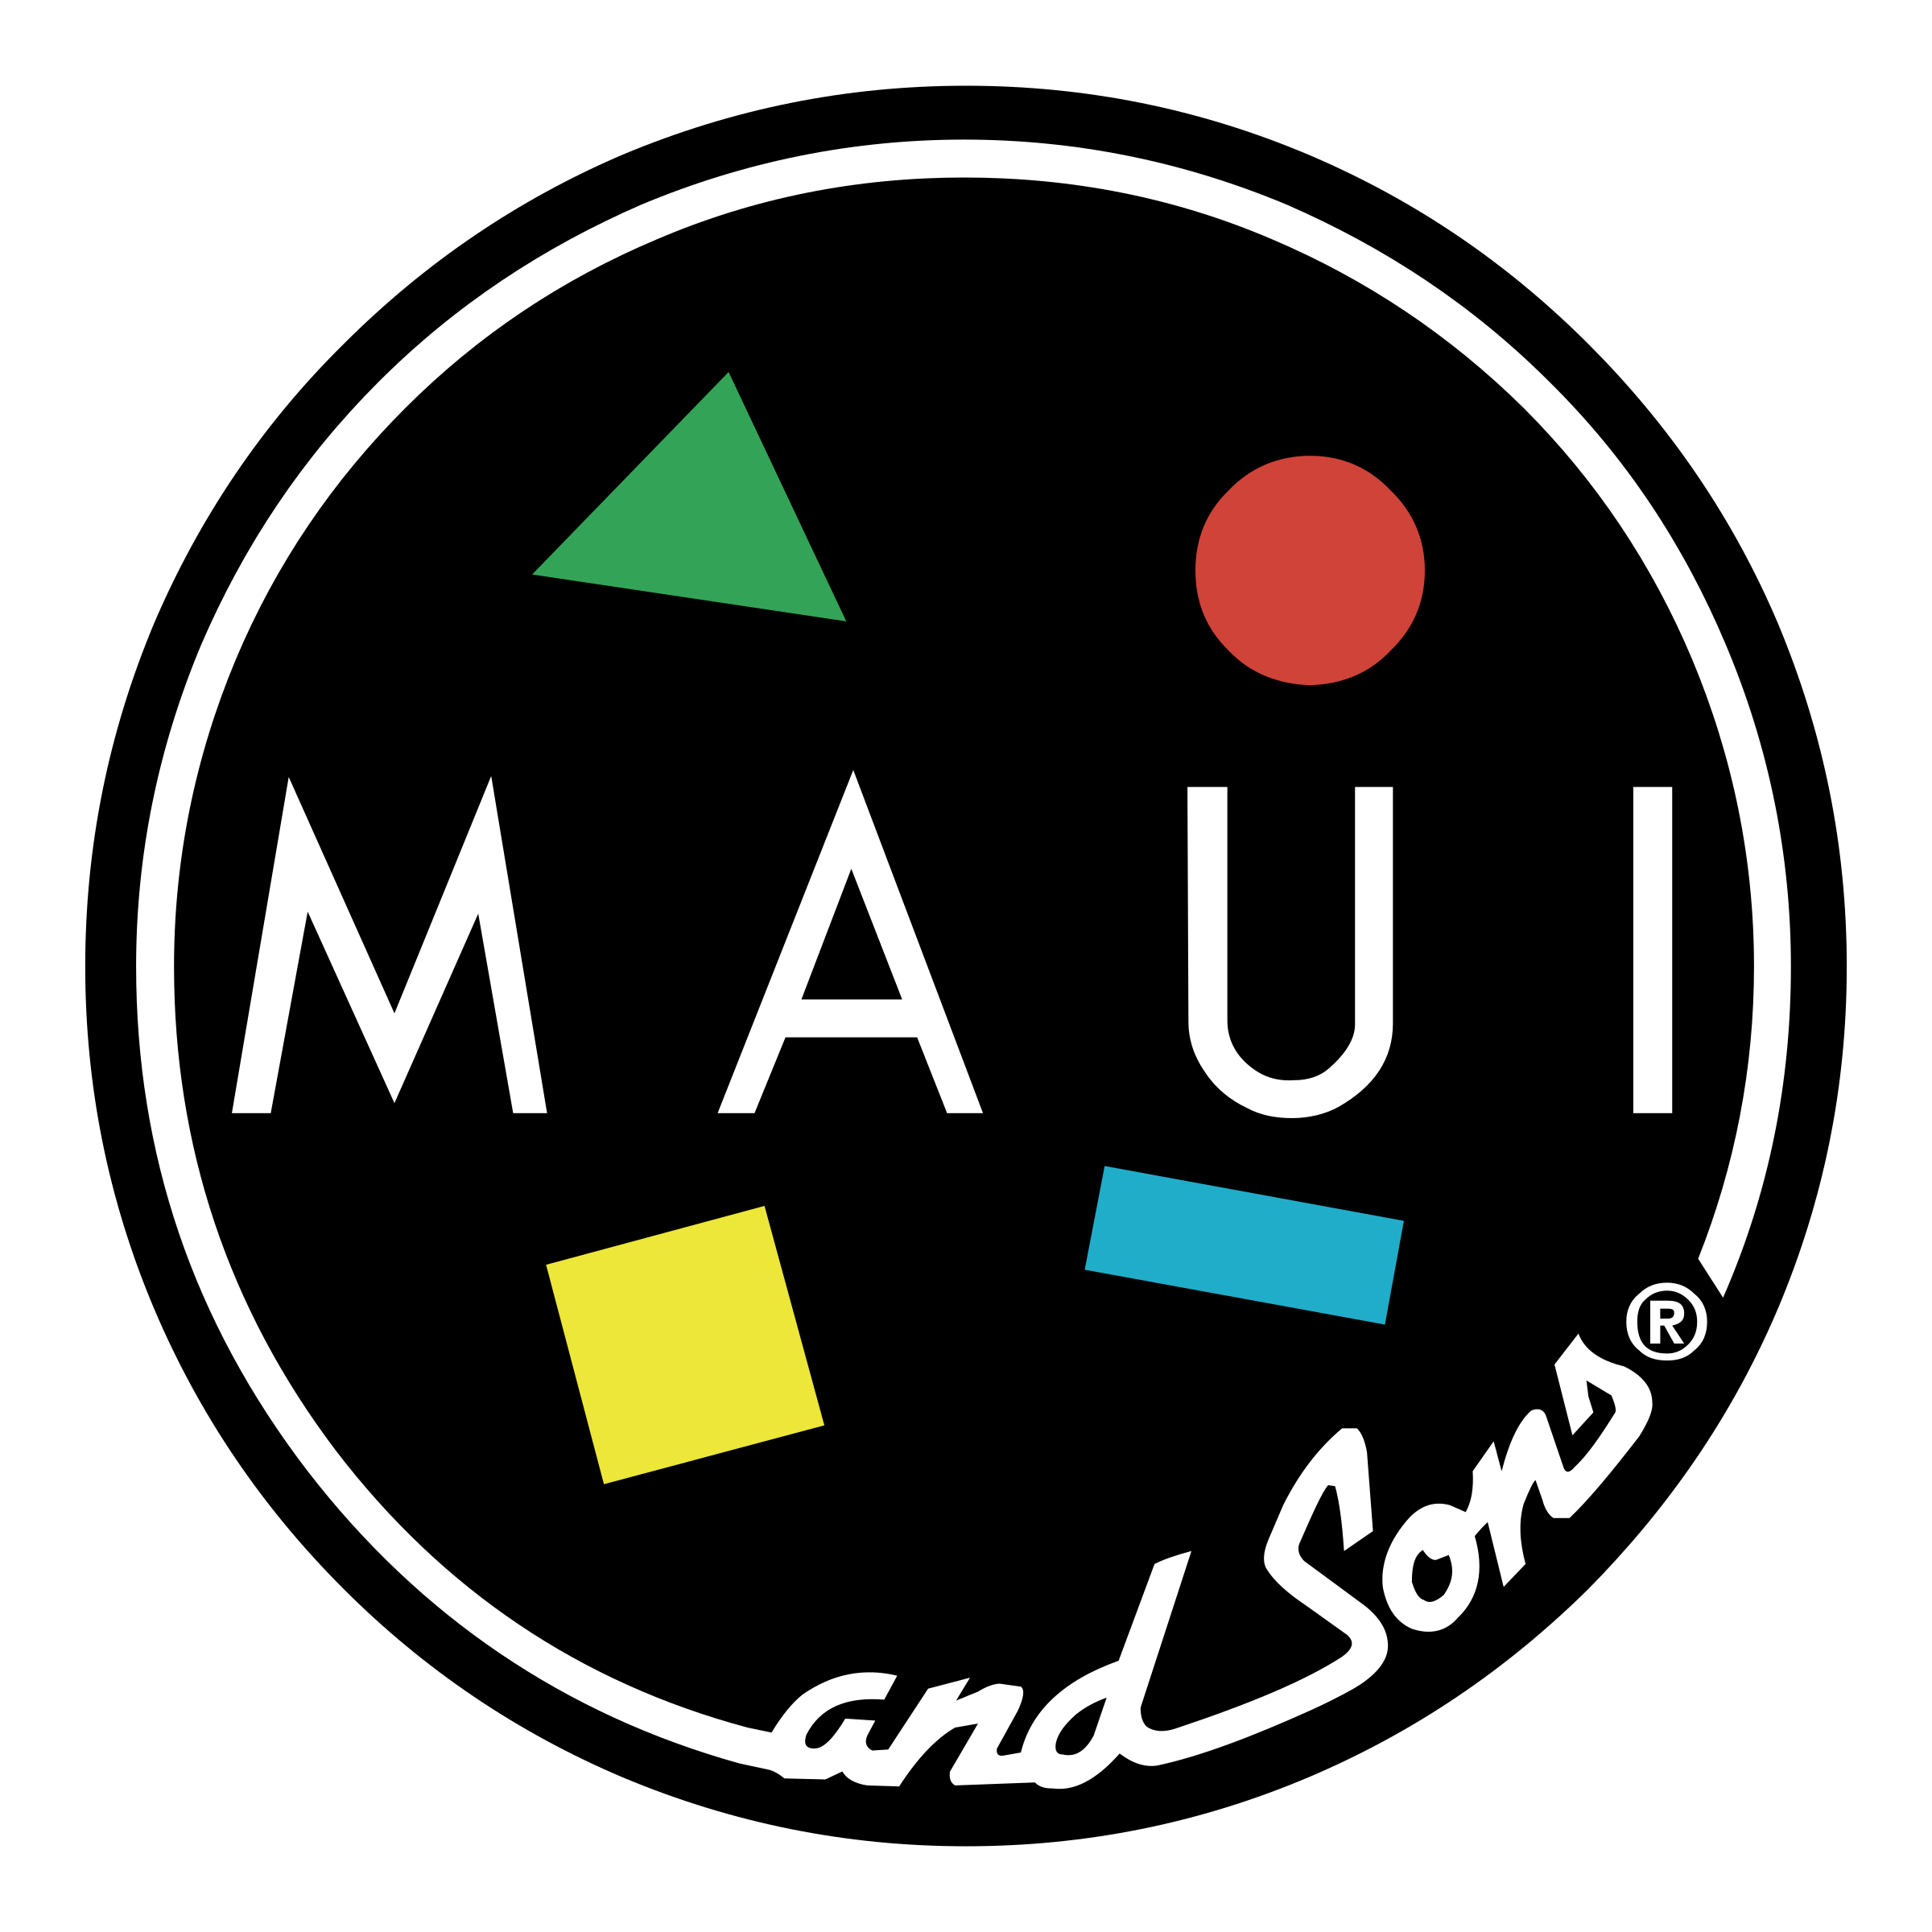 Maui Logo - Maui & Sons Logo PNG Transparent & SVG Vector - Freebie Supply